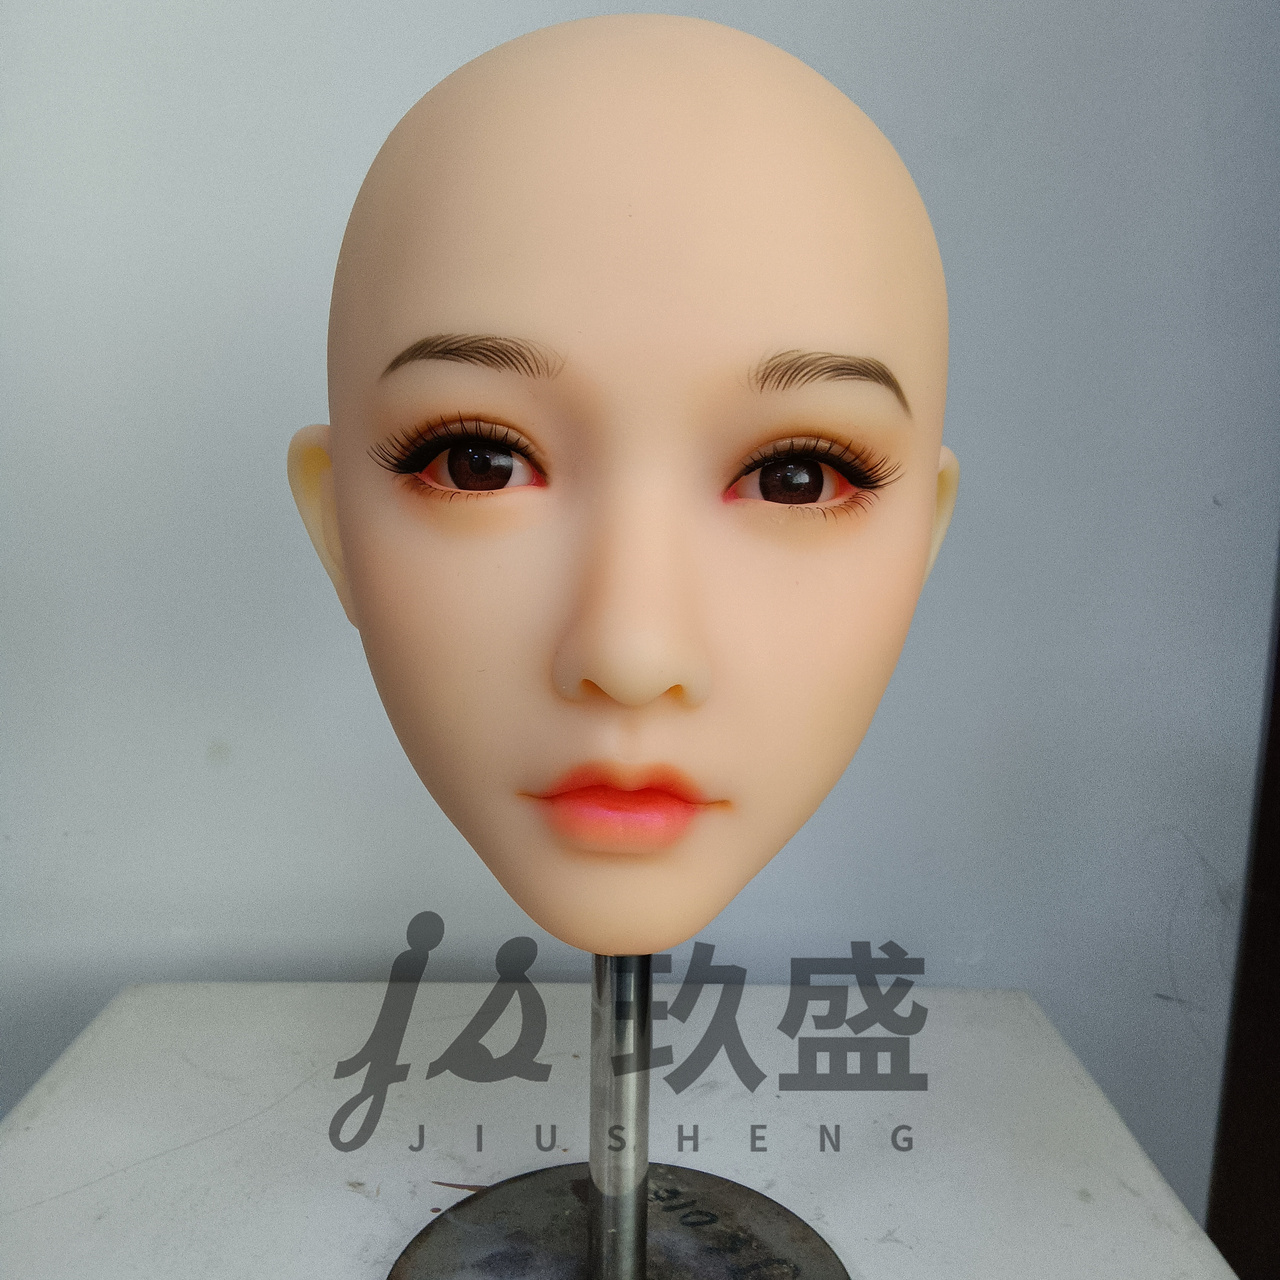 Jiusheng head no. 21 - Heads | Dollstudio EU